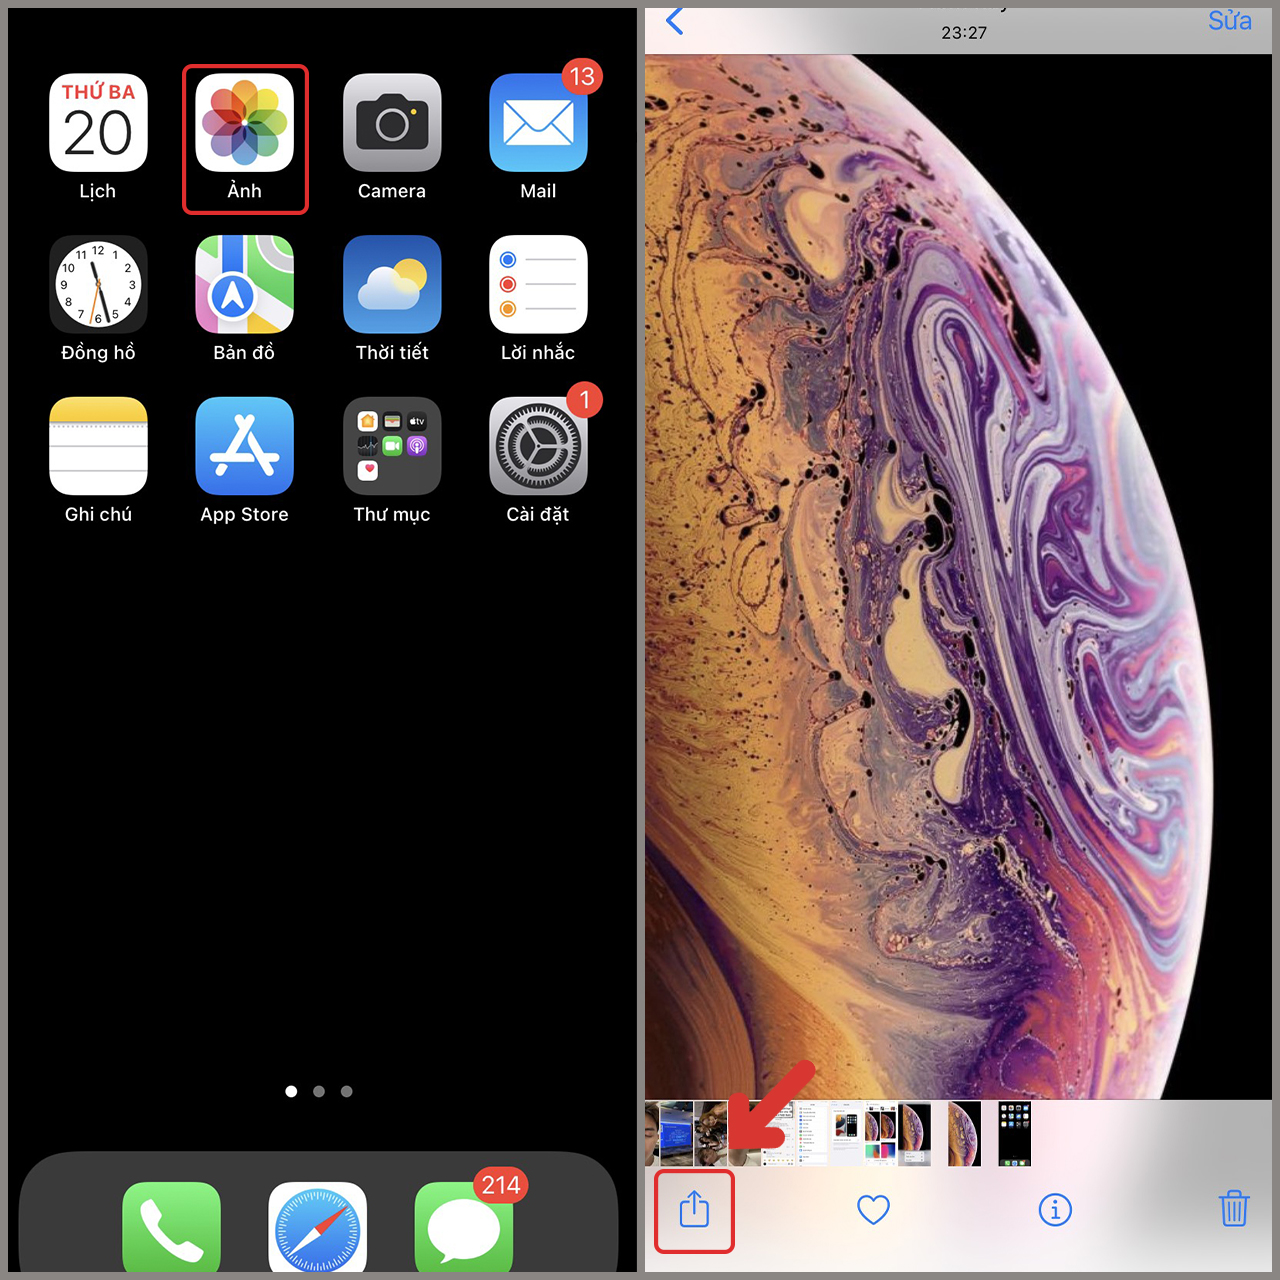 Ảnh nền đẹp chất lượng cao Hình nền trên iPhone Xs iPhone Xs Max và iPhone  Xr